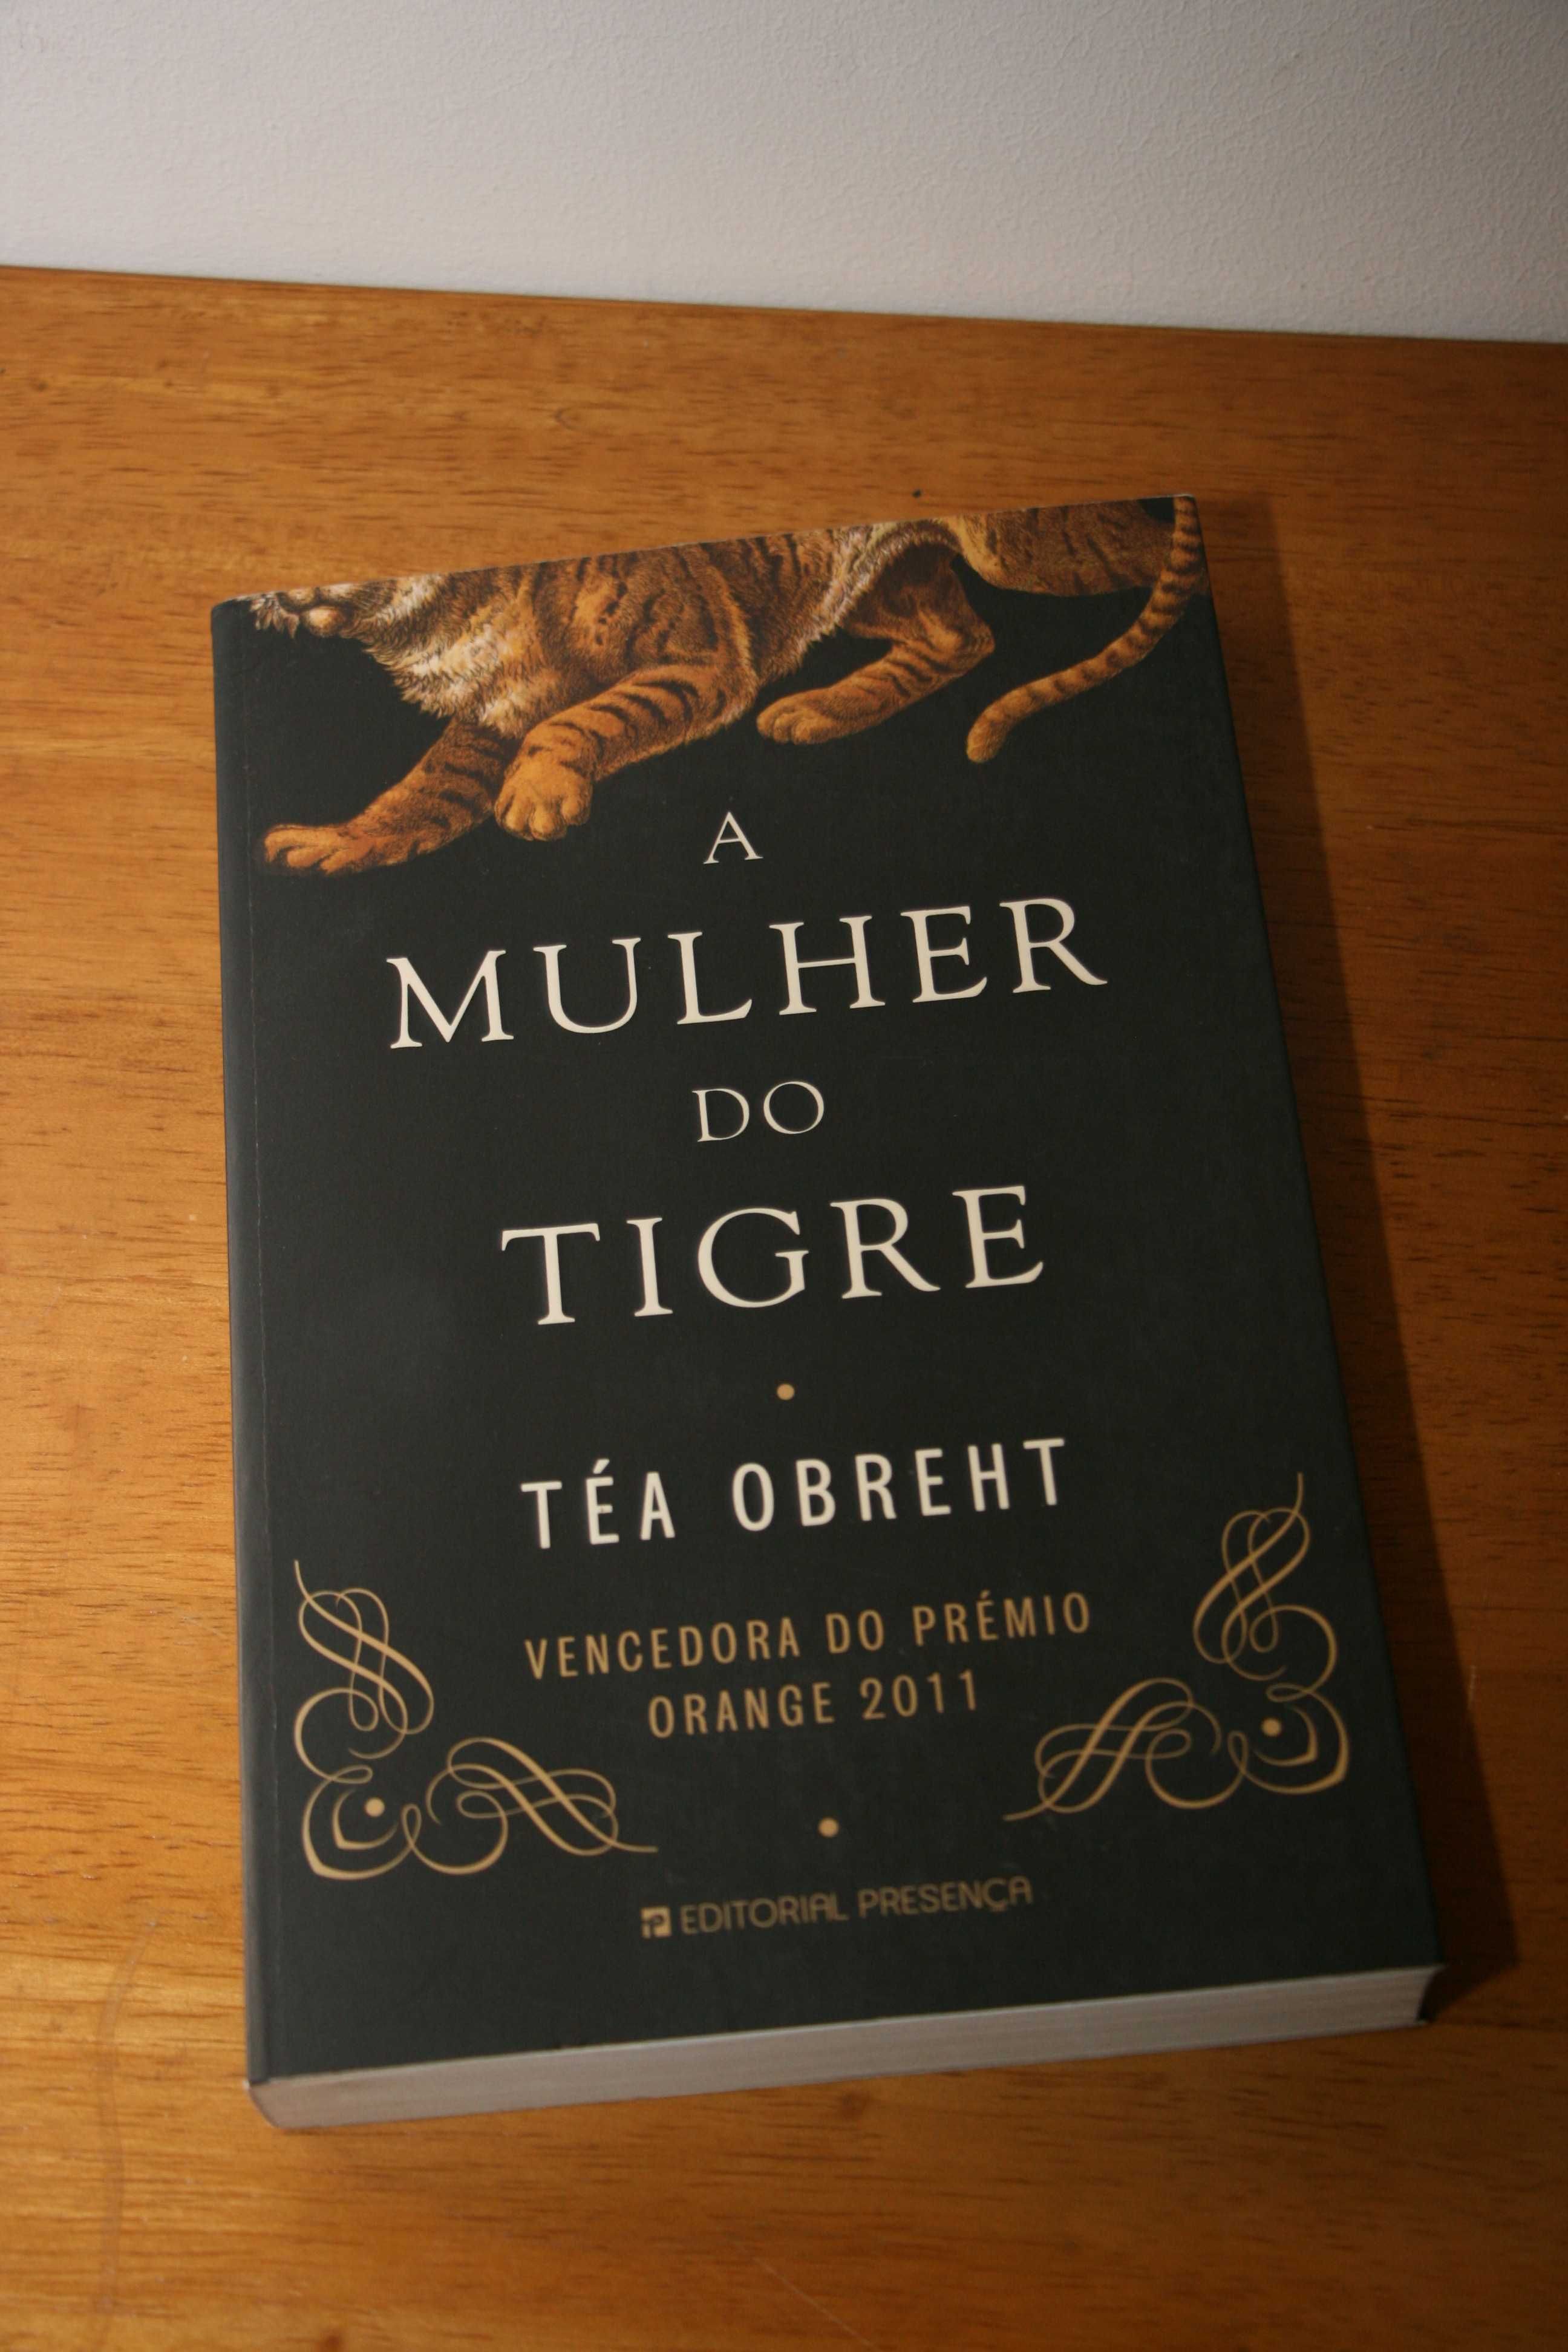 Livro "A Mulher do Tigre"